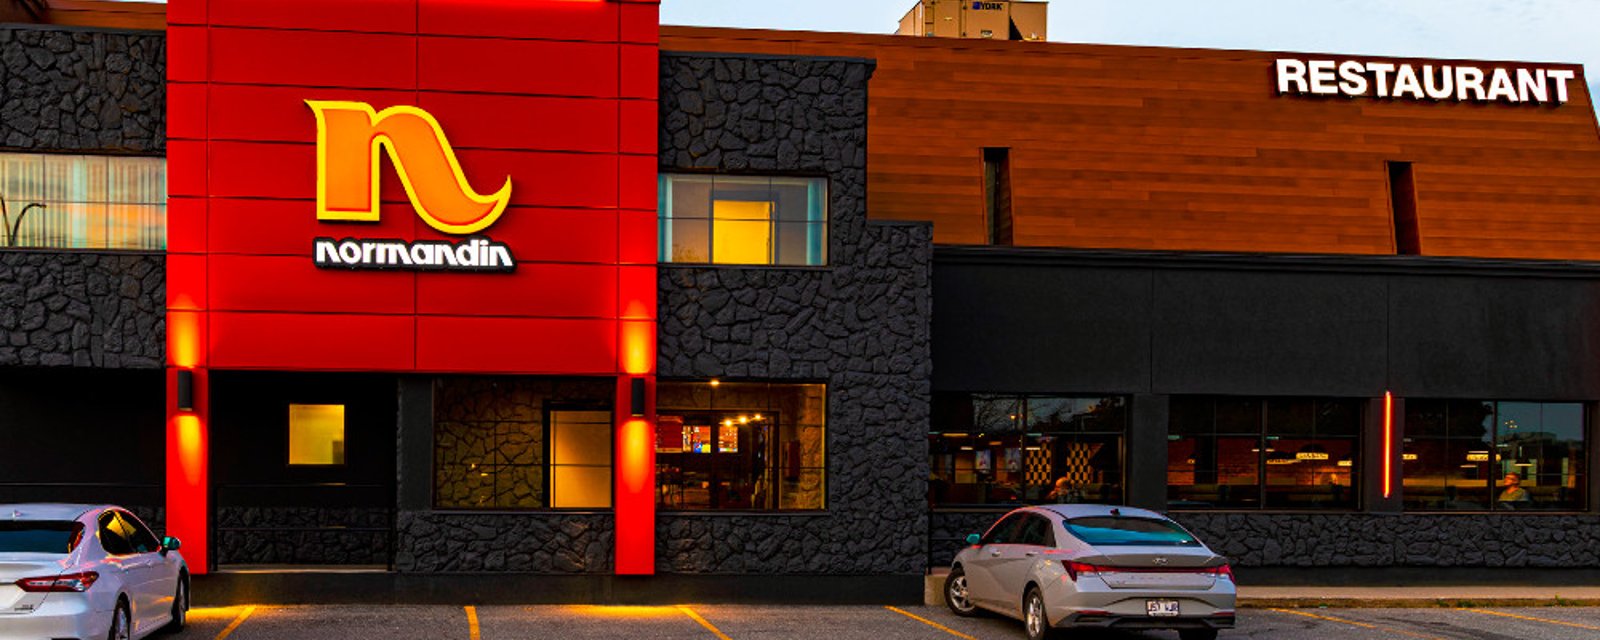 Les restaurants Normandin lancent une nouvelle formule qui va beaucoup plaire aux Québécois 